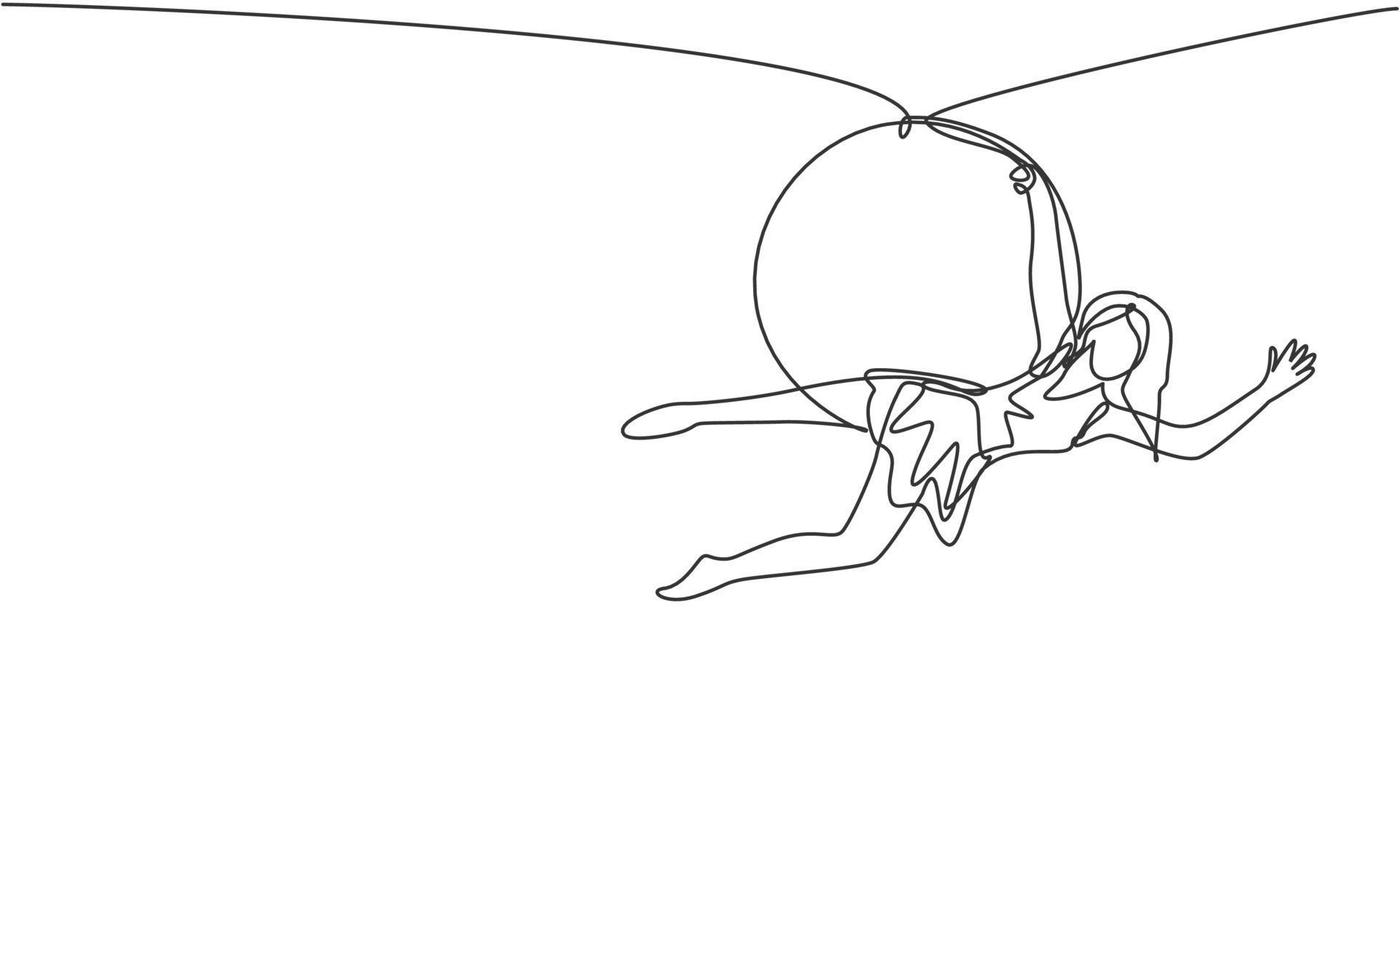 une seule ligne continue dessinant une femme acrobatique qui s'exécute sur un cerceau aérien en s'accrochant à une main et en redressant son corps. dynamique une ligne dessiner illustration vectorielle de conception graphique. vecteur